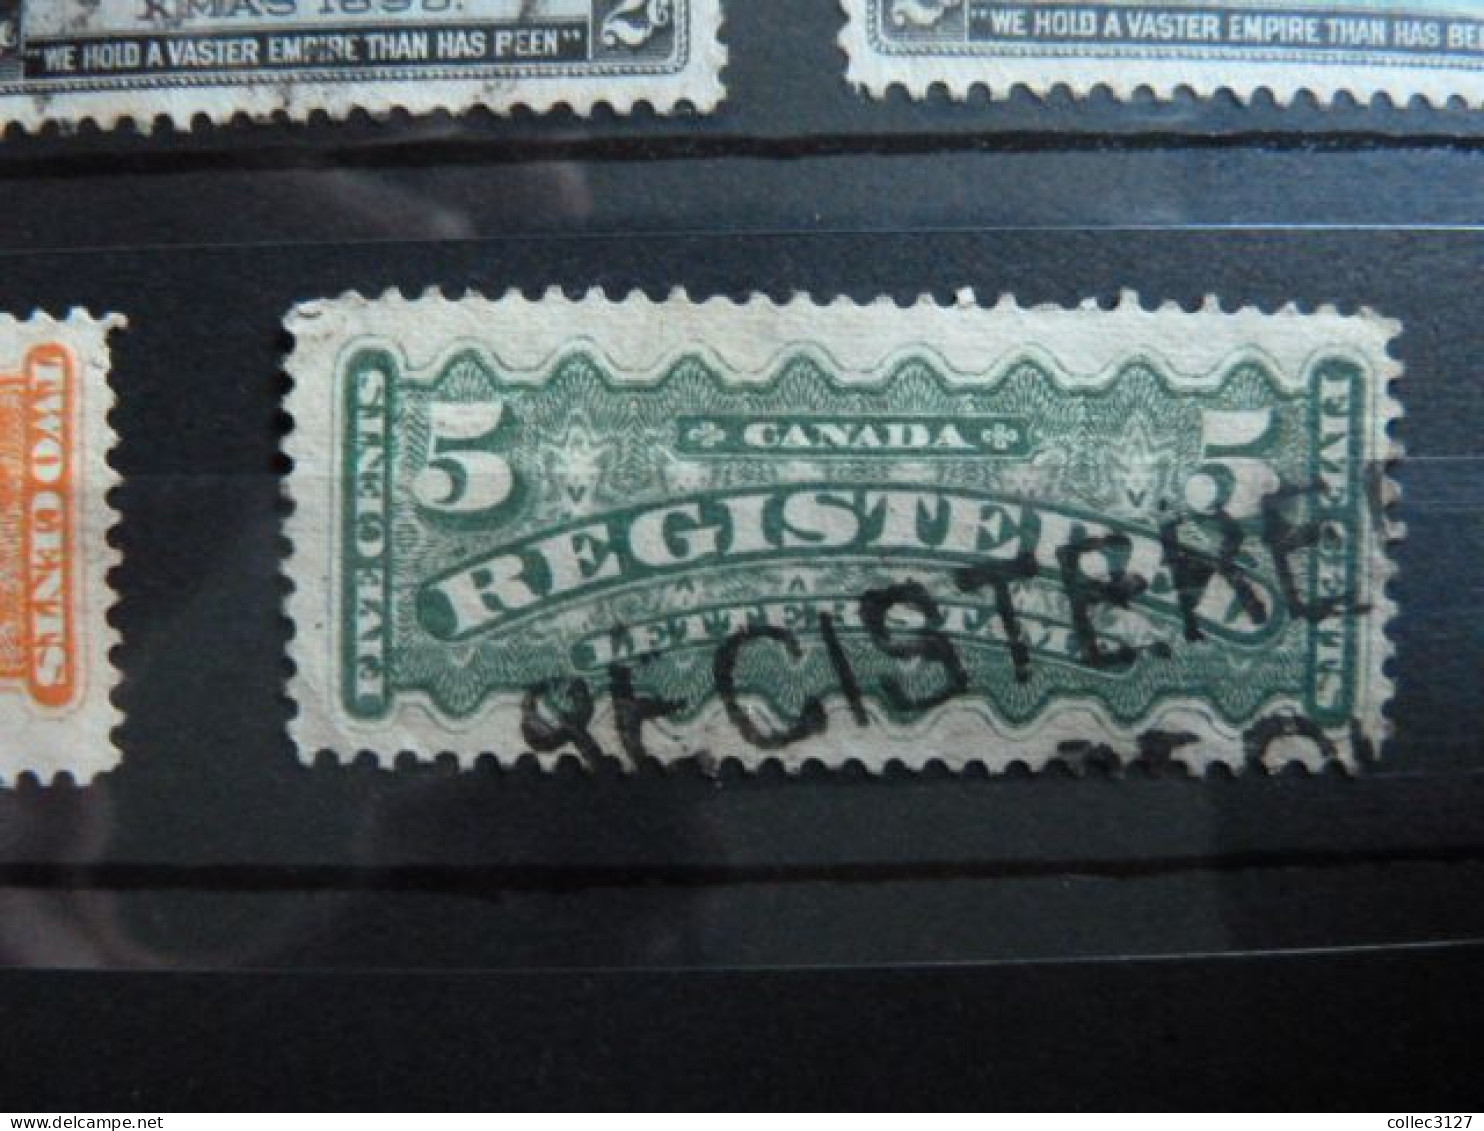 H2 - Canada Petit lot de timbres d'avant 1900 - Les timbres neufs sont à considérer sans gomme - voirs photos détaillées